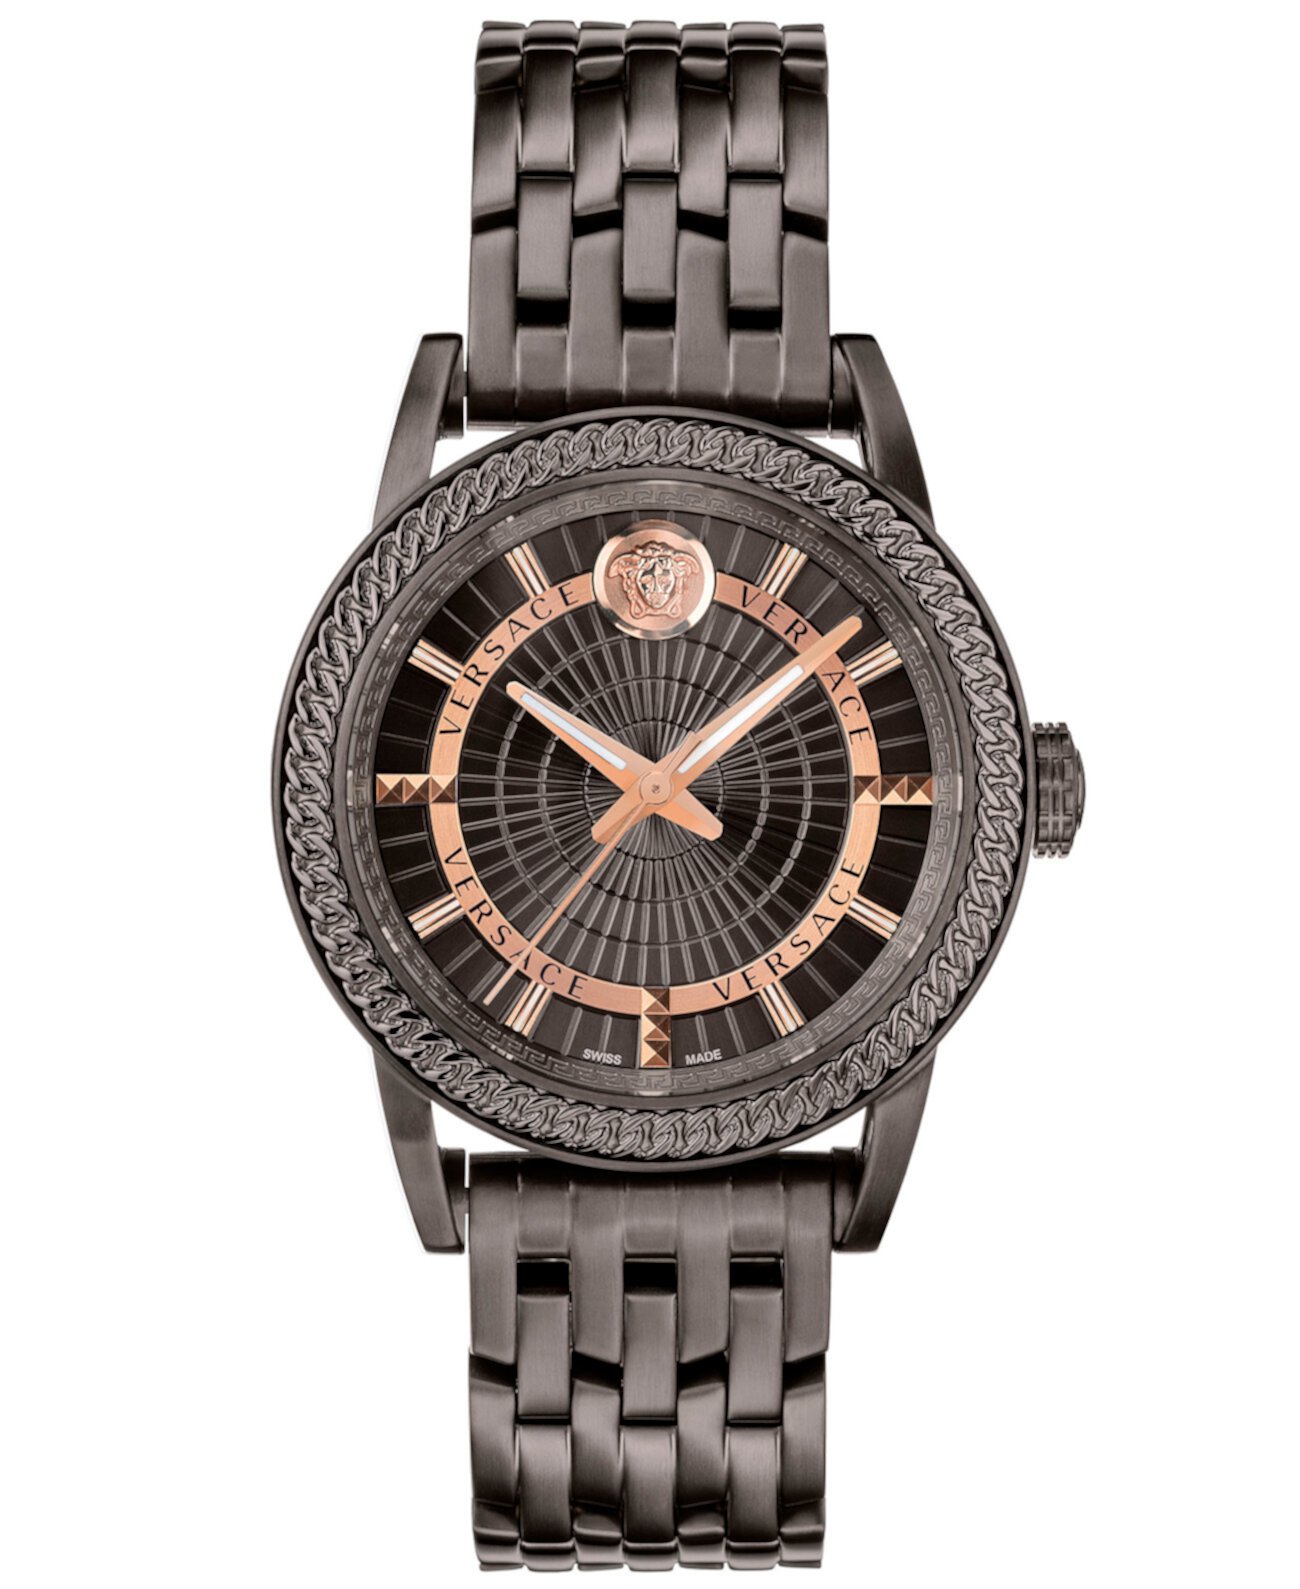 Мужские наручные часы Swiss Code цвета бронзы с браслетом из нержавеющей стали, 41 мм Versace